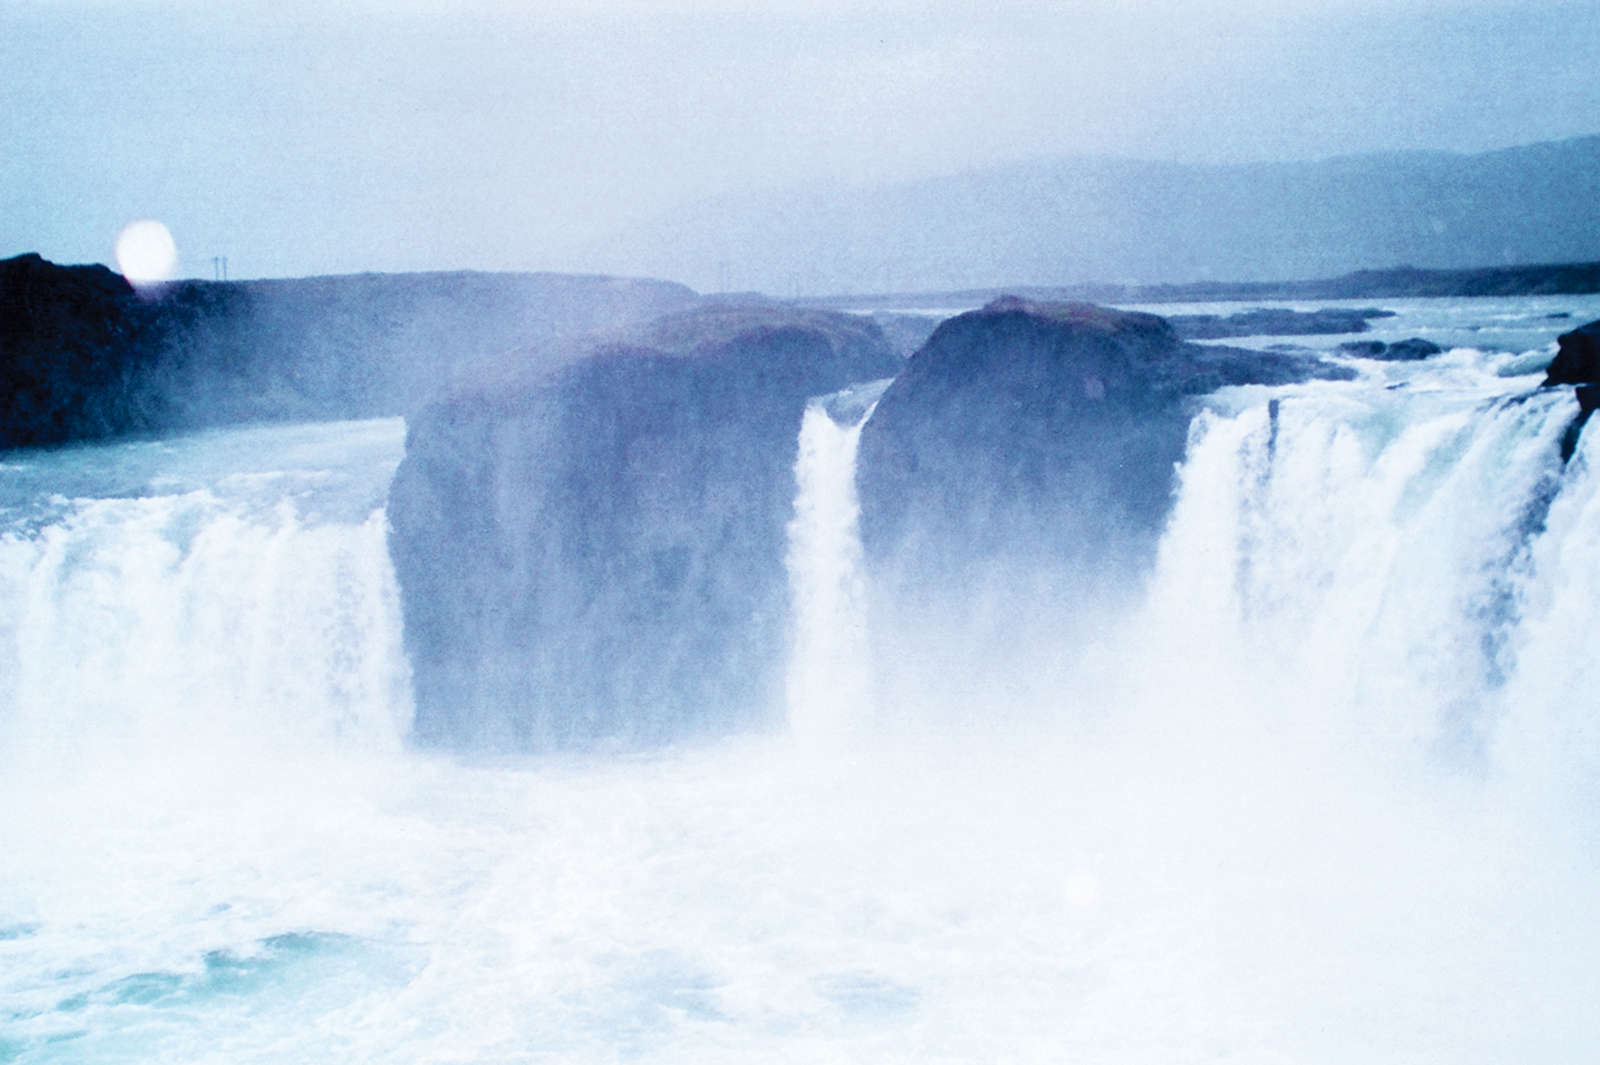 Fotografie: "Godafoss" Island - Wasserfall -